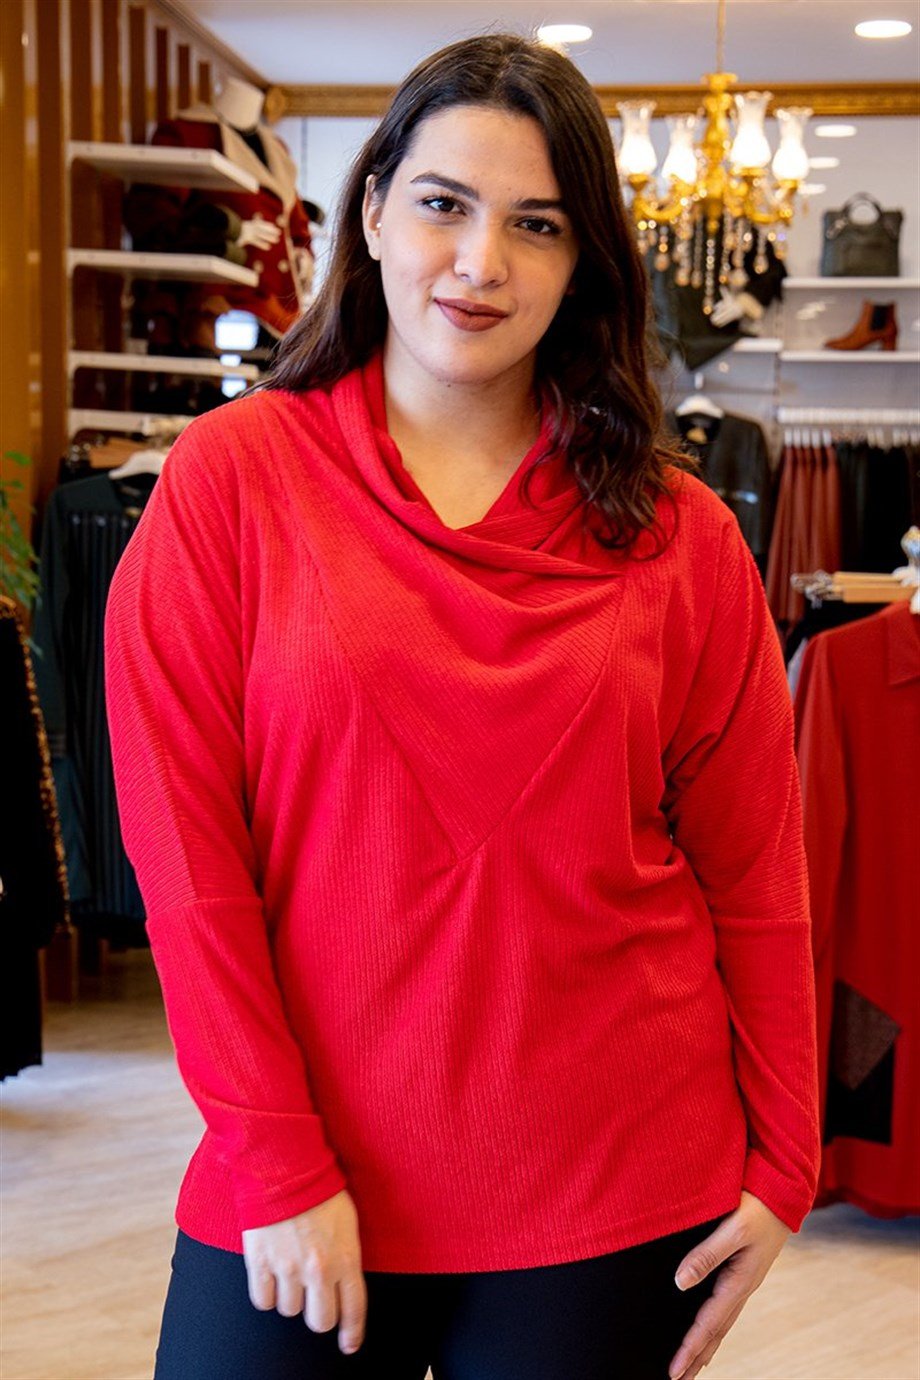 Büyük Beden Bluz Örme Triko Degaje Yaka Öykü Triko Bluz Kırmızı